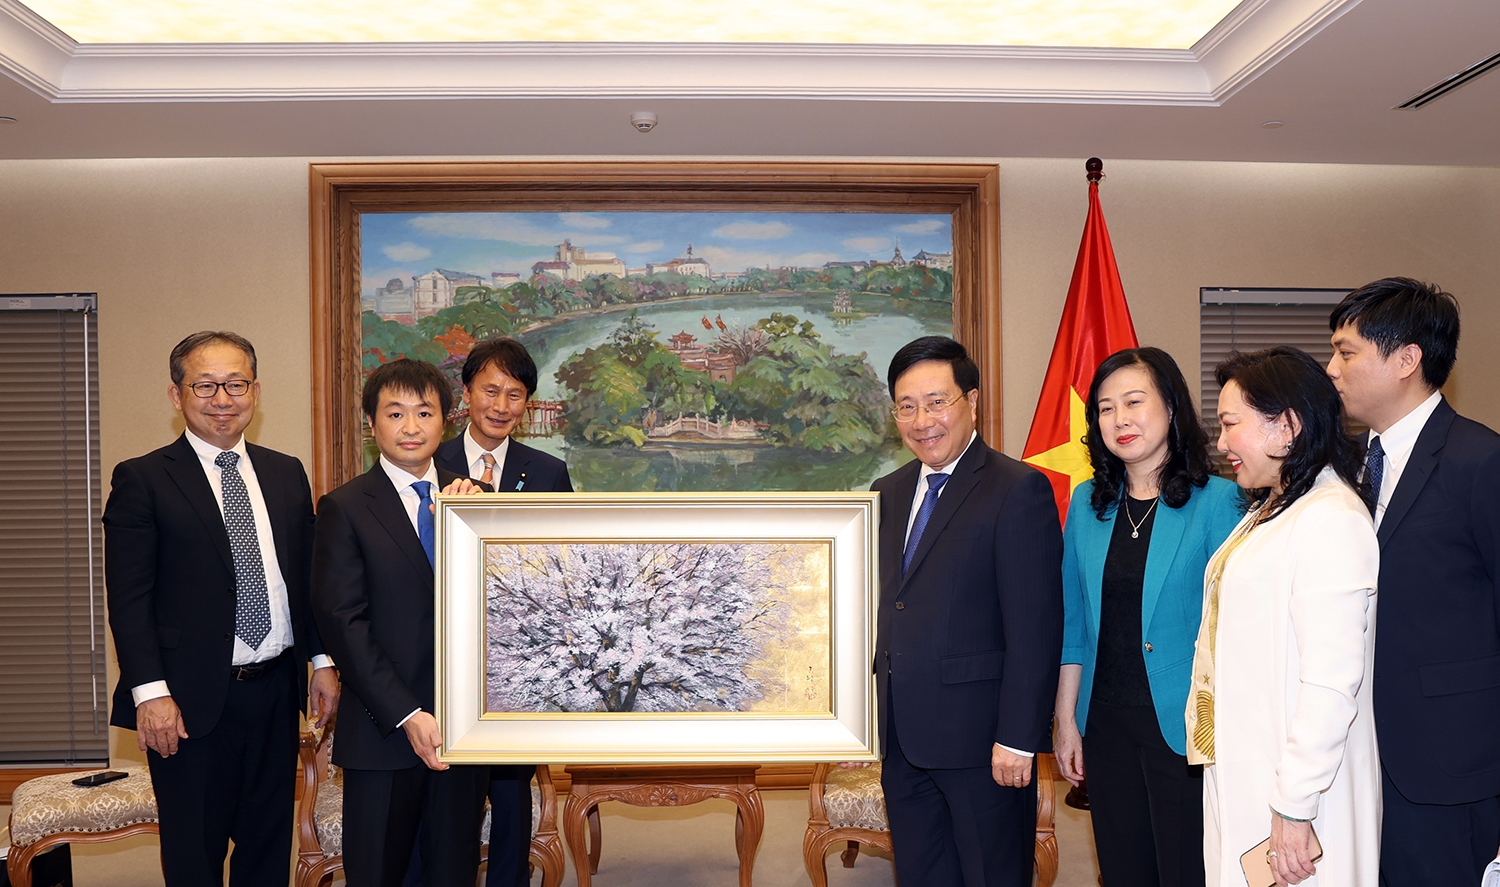 Phó Thủ tướng Thường trực hoan nghênh Tập đoàn EMS đầu tư và xây dựng Trung tâm Y khoa Nhật Bản T-Matsuoka đầu tiên tại Hà Nội - Ảnh: VGP/Hải Minh